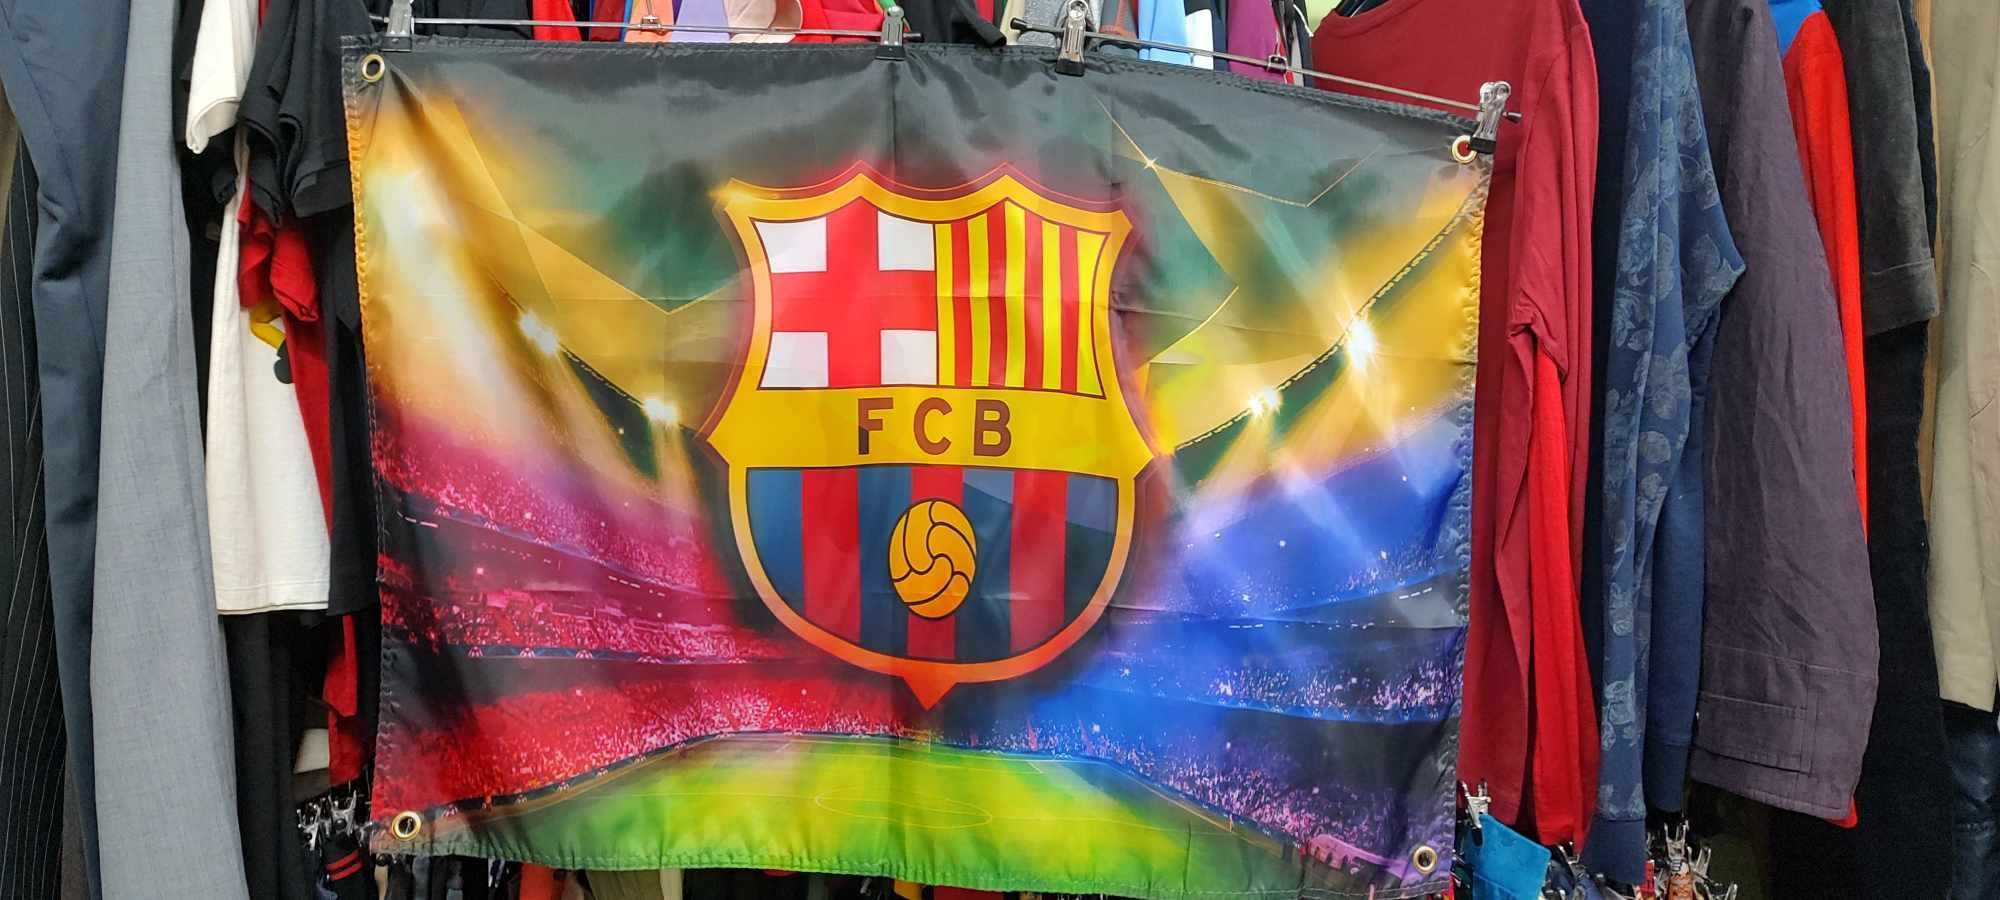 FC Barcelona , Liverpool F.C. ,Manchester United F.C. флагове-последни